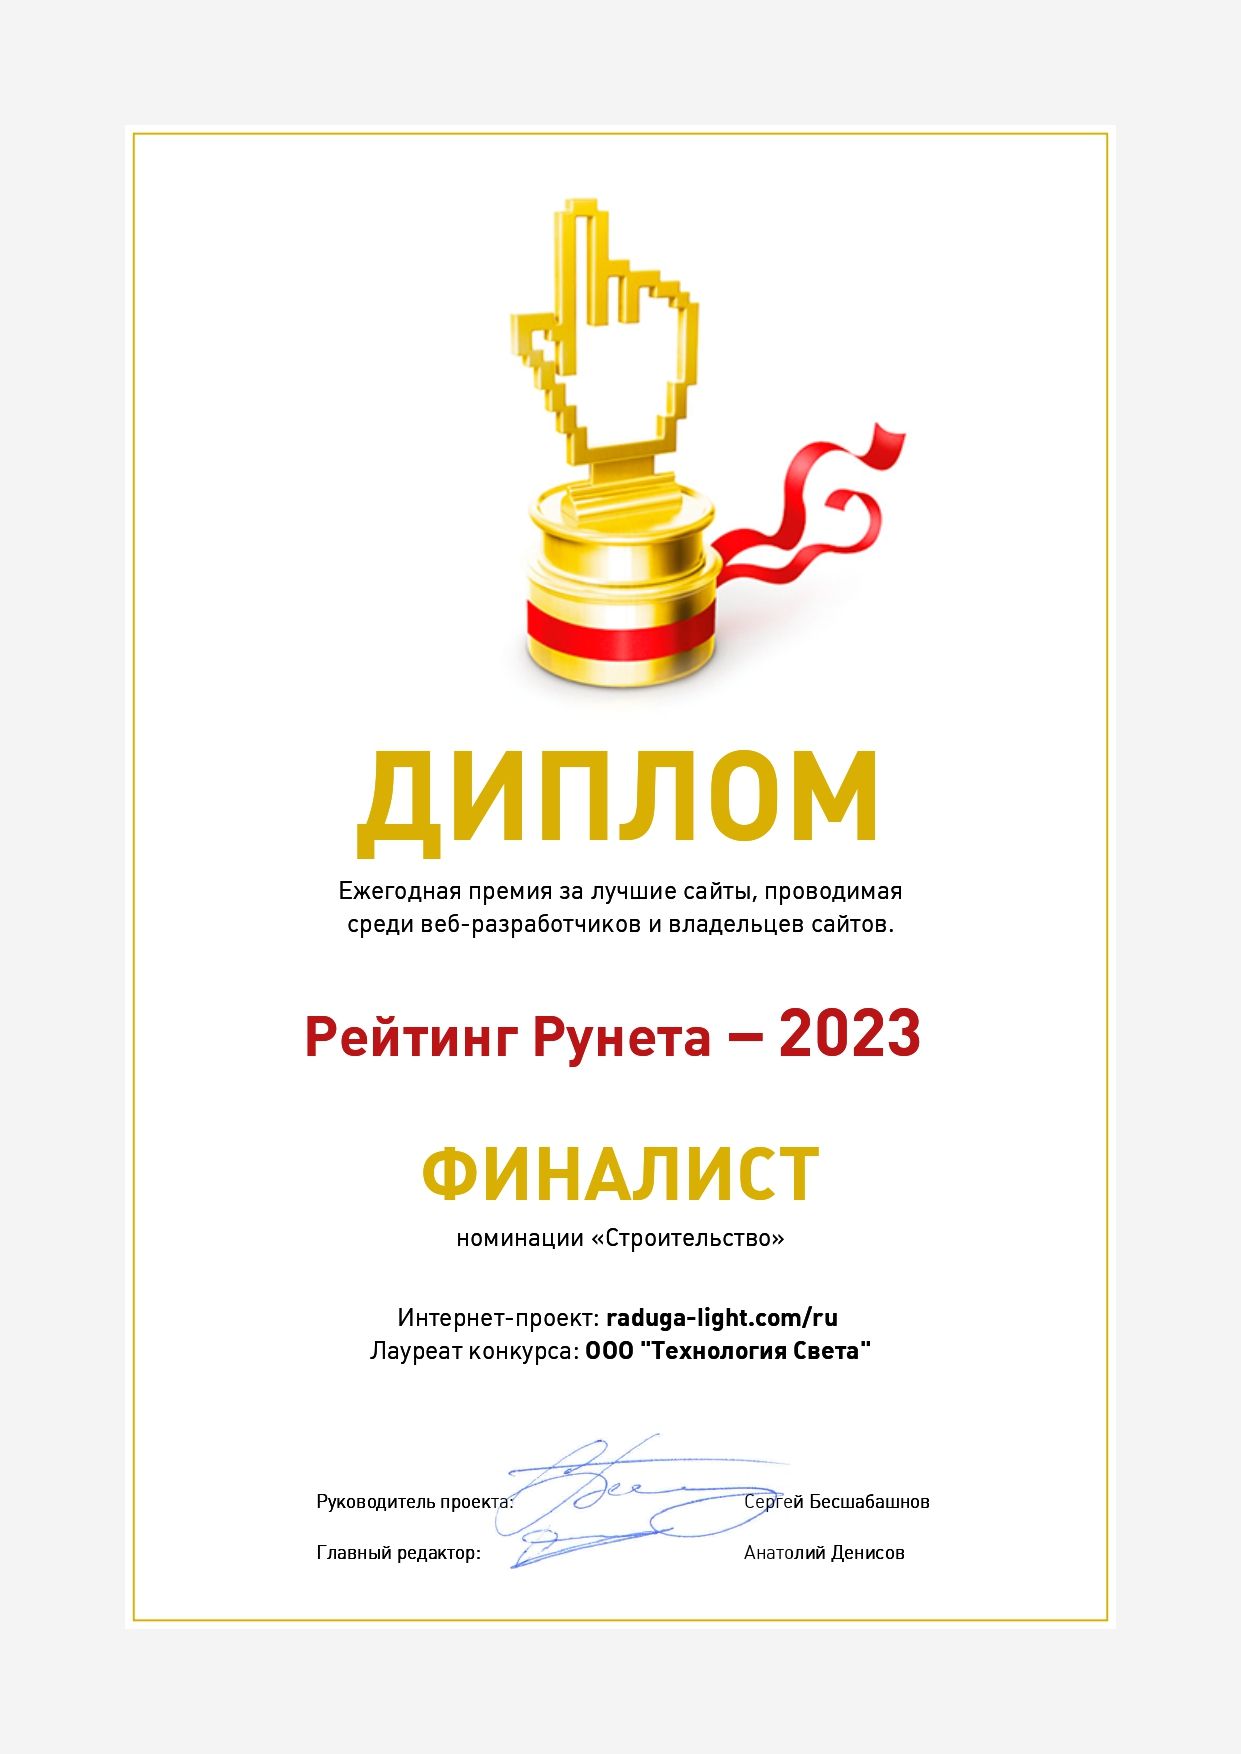 Сайт RADUGA среди финалистов «Рейтинга Рунета-2023»